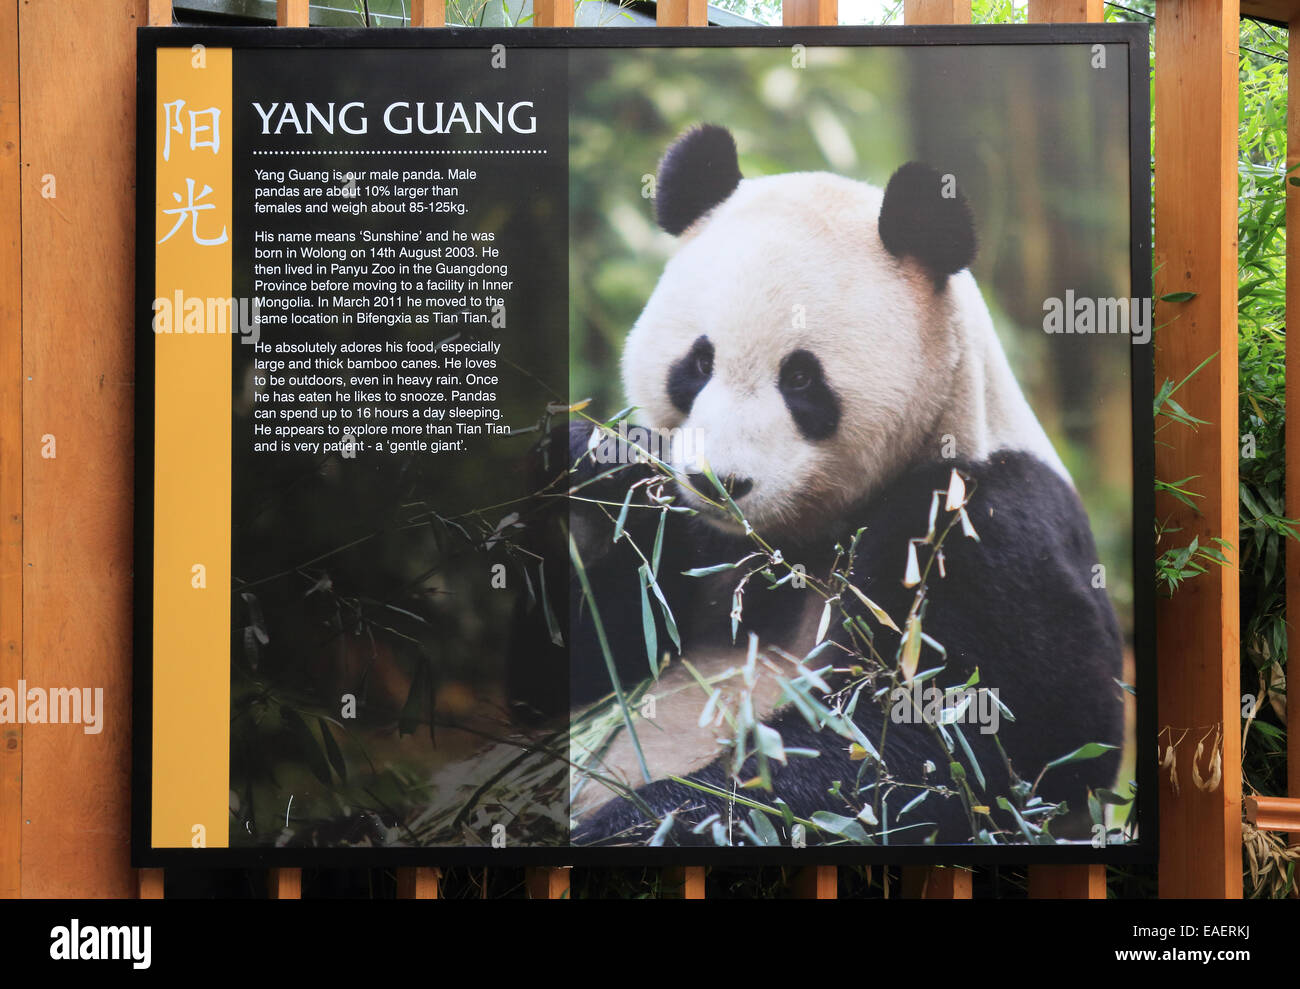 Indicazioni per il panda gigante nel recinto dello Zoo di Edimburgo, Scozia, Regno Unito Foto Stock